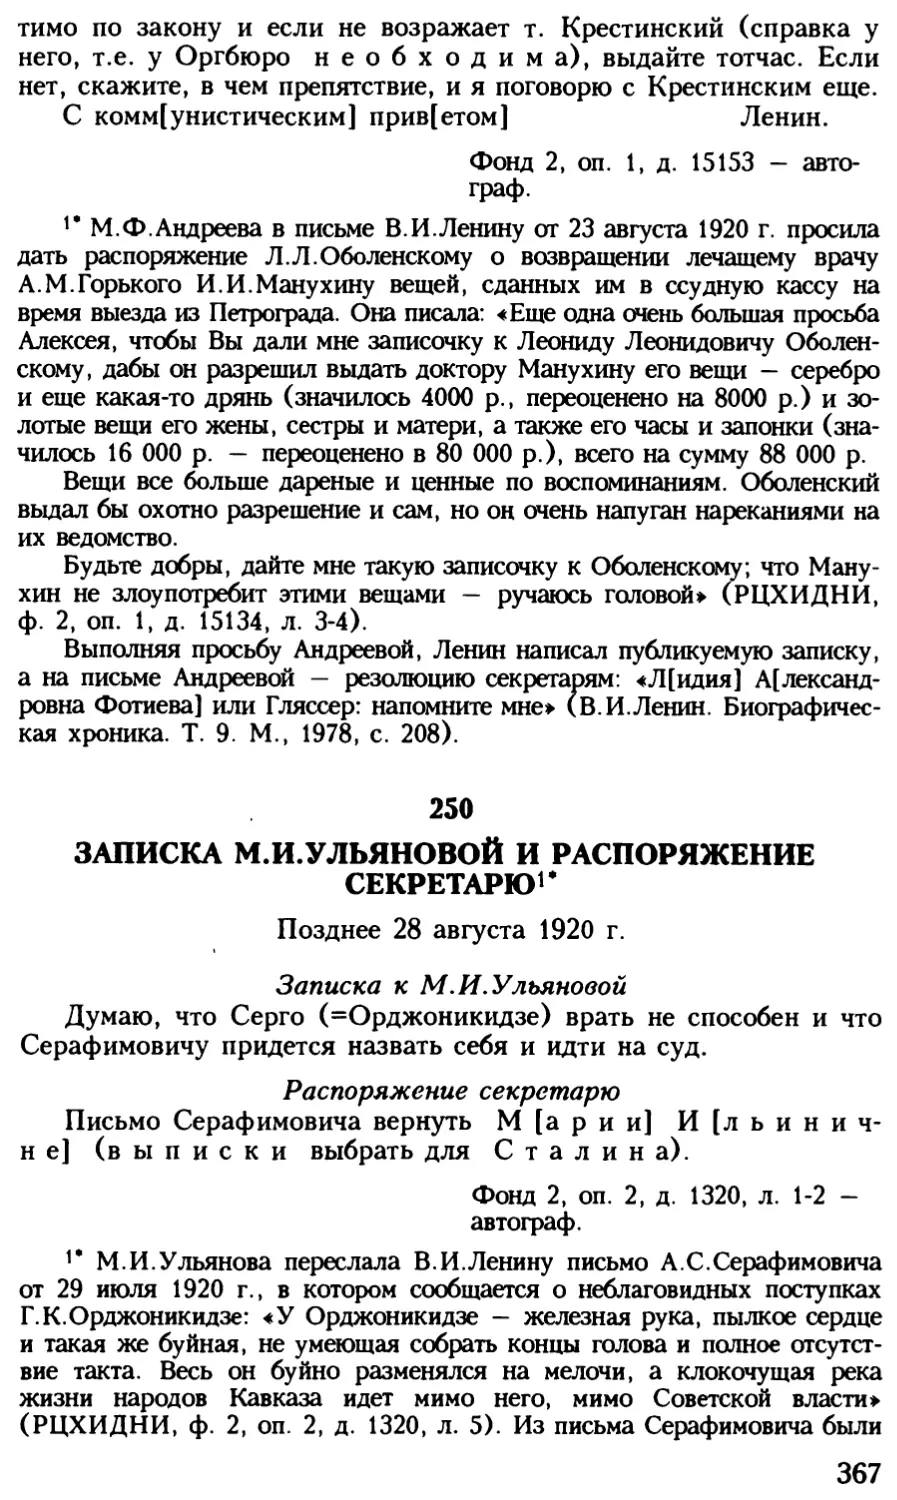 250. Записка М.И.Ульяновой и распоряжение секретарю. Позднее 28 августа 1920 г